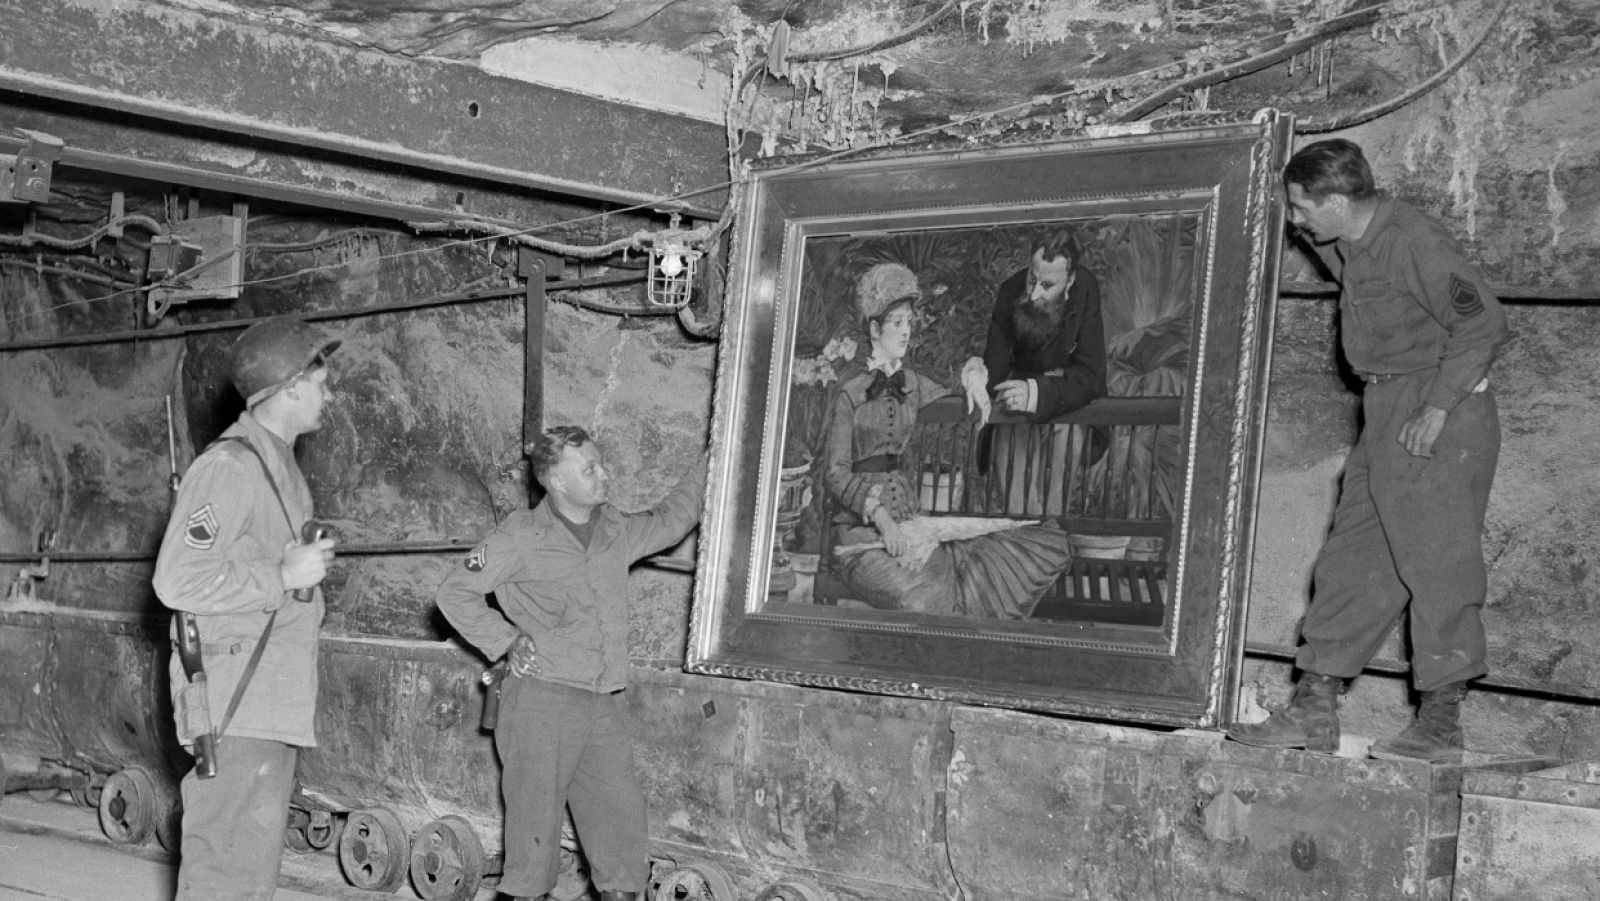 Cuadro de Manet descubierto por las tropas de EE.UU. en las minas alemanas de Merkers (1945)